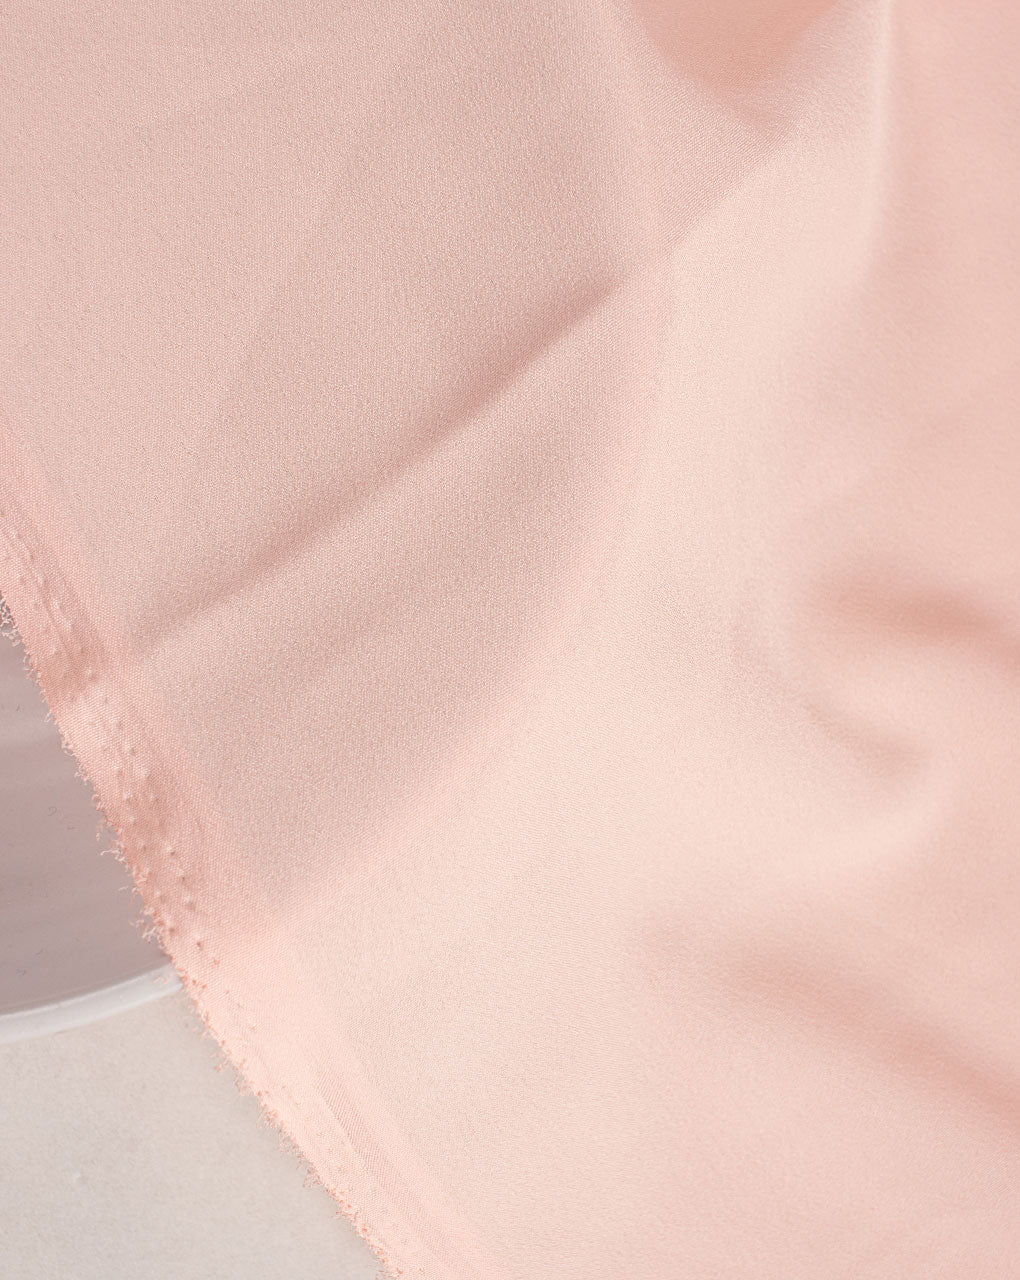 Peach Plain Crepe Fabric